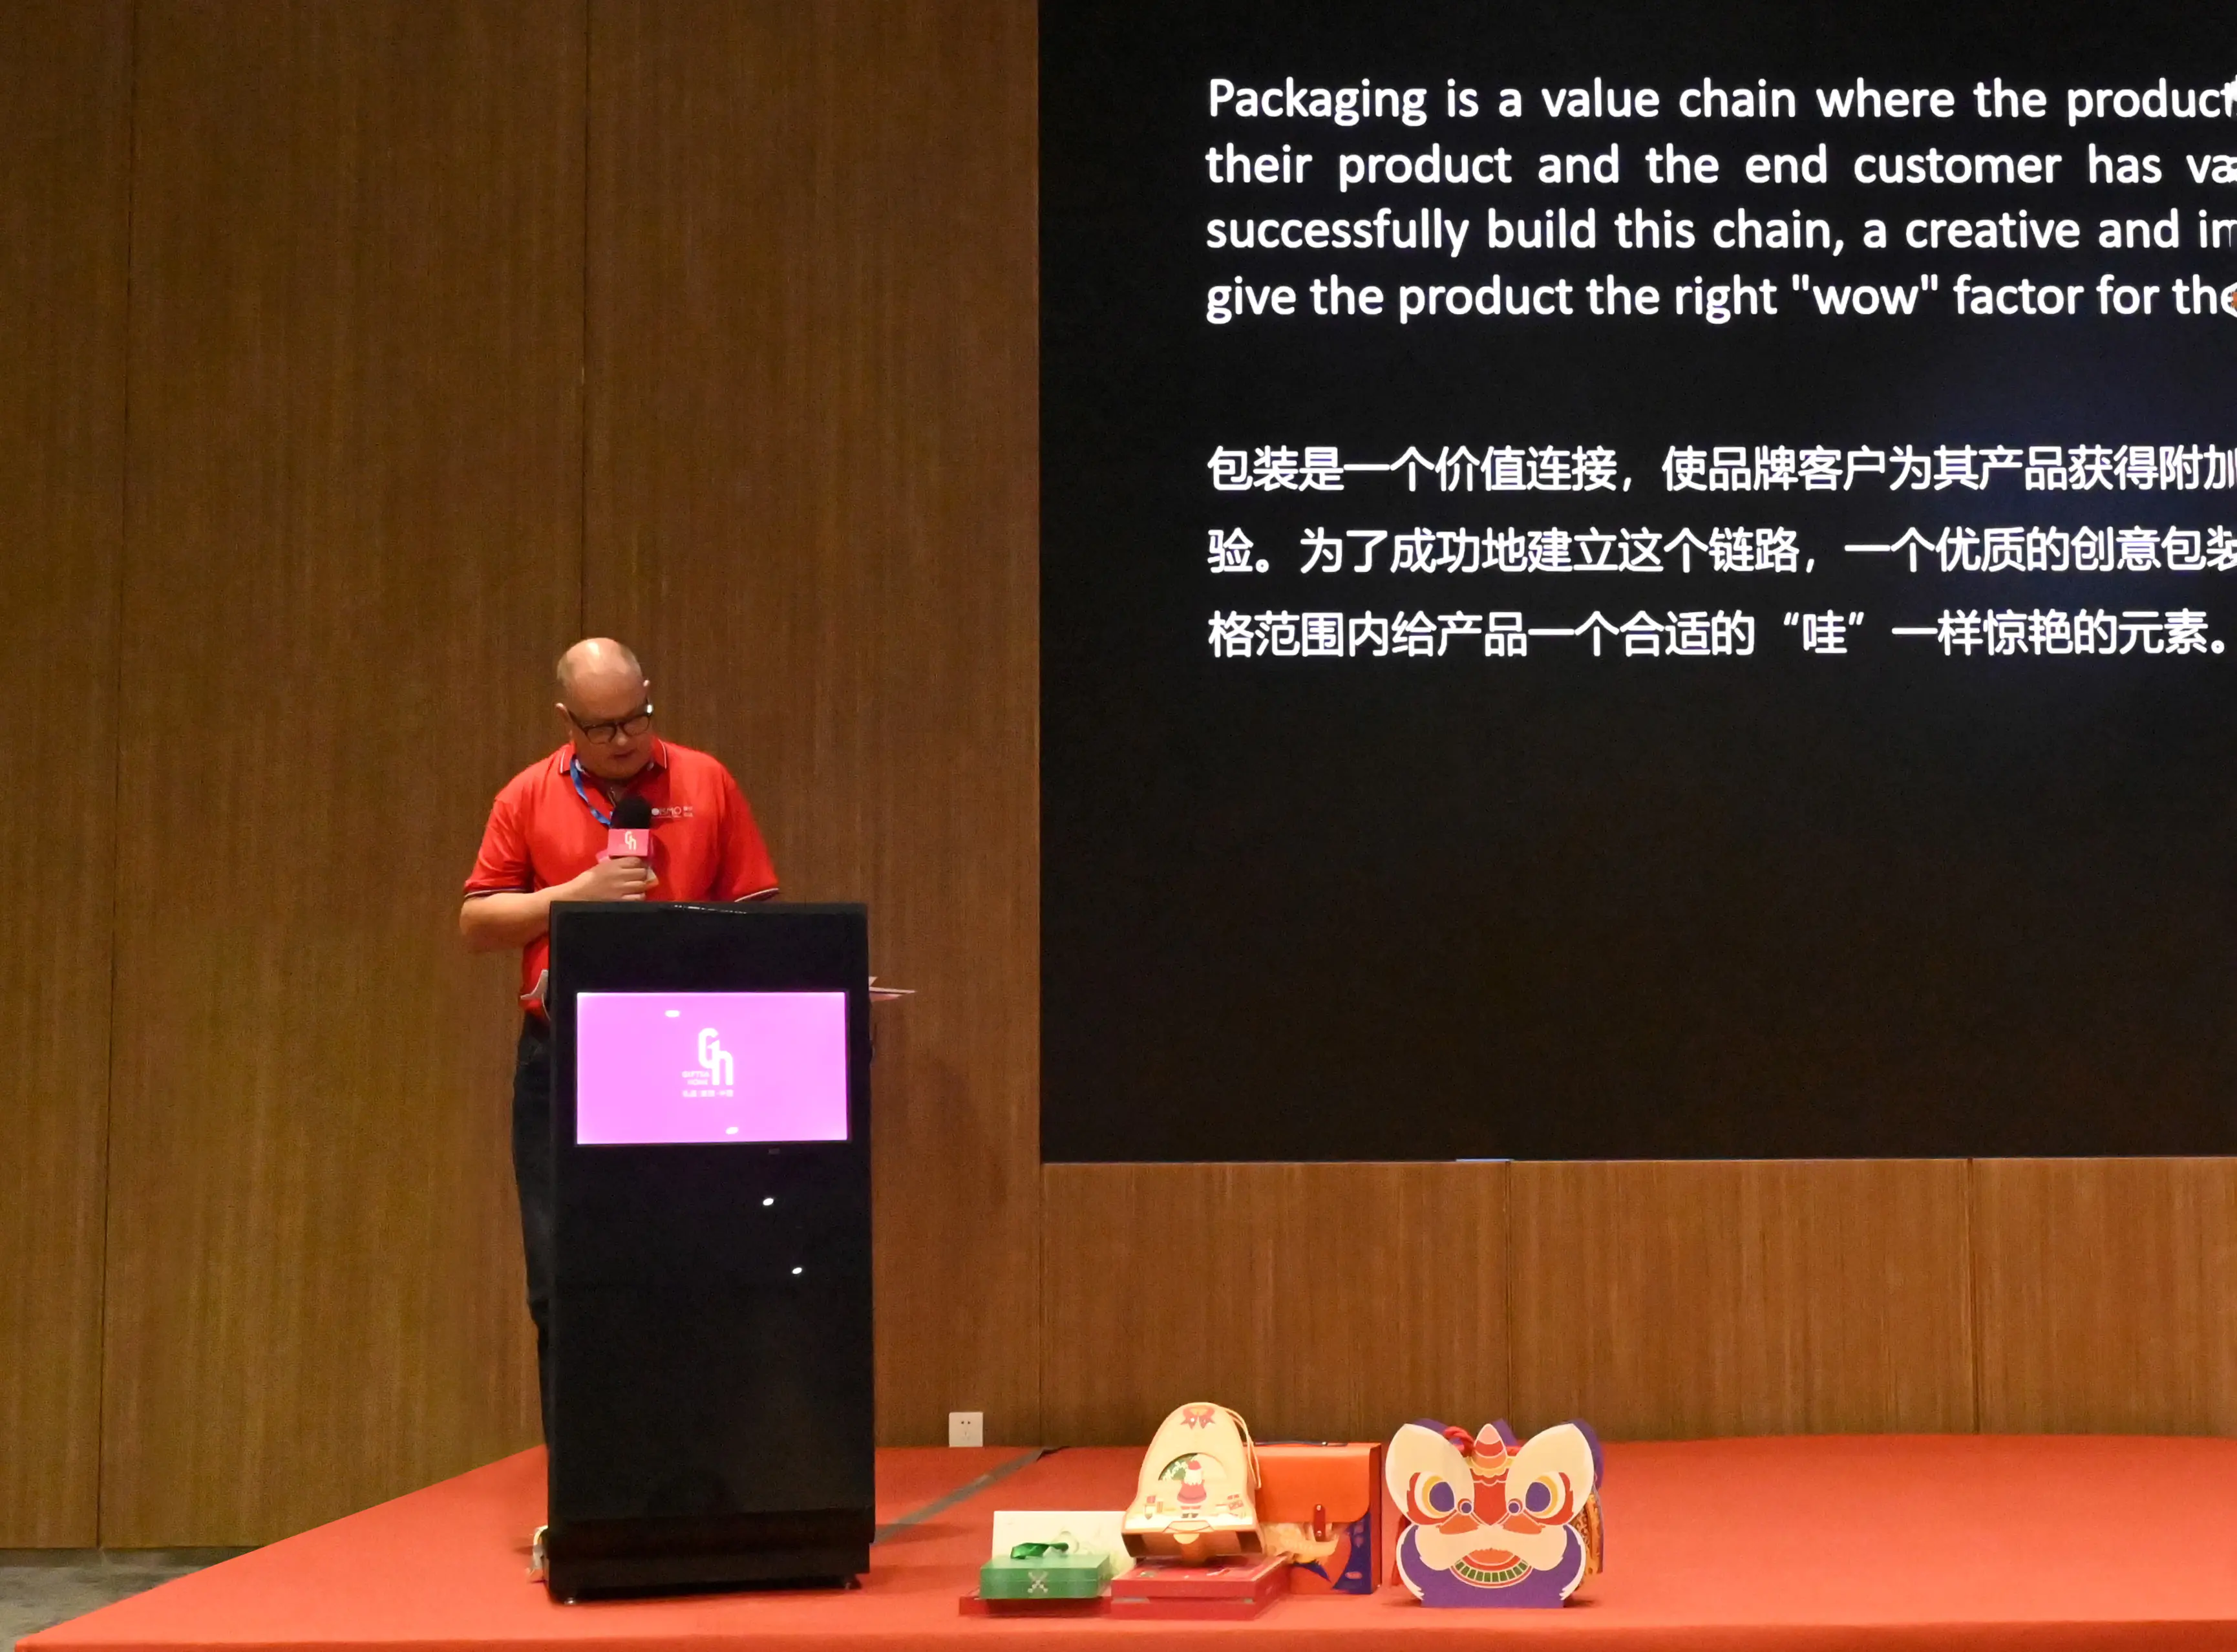 Discurs del CEO de SEISMO a la Fira de Shenzhen sobre Disseny Creatiu d'Envasos